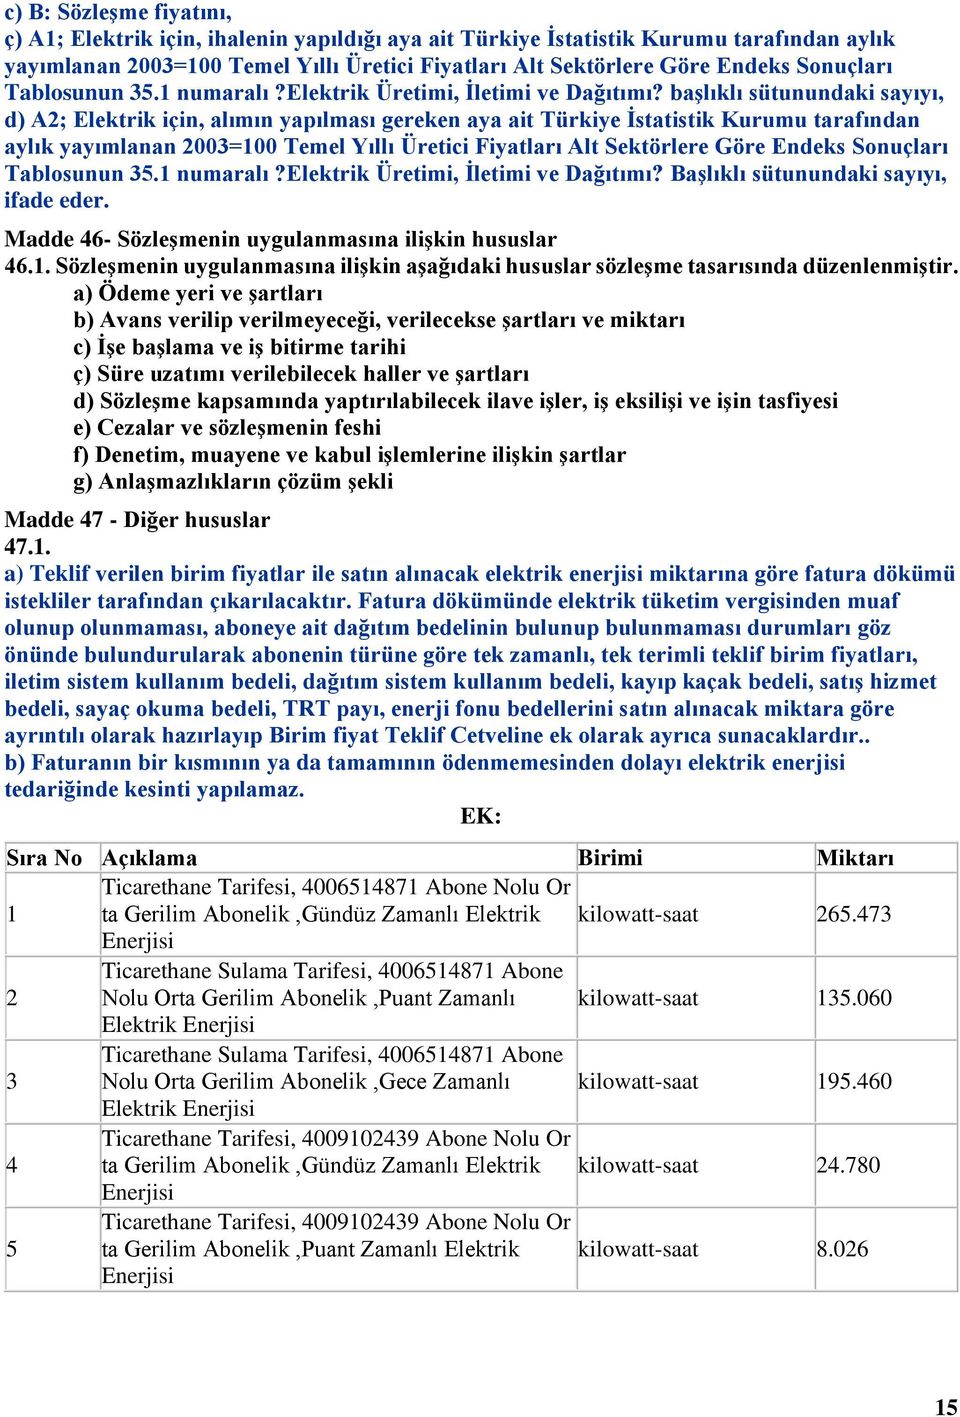 başlıklı sütunundaki sayıyı, d) A2; Elektrik için, alımın yapılması gereken aya ait Türkiye İstatistik Kurumu tarafından aylık yayımlanan 2003=100 Temel Yıllı Üretici Fiyatları Alt Sektörlere Göre